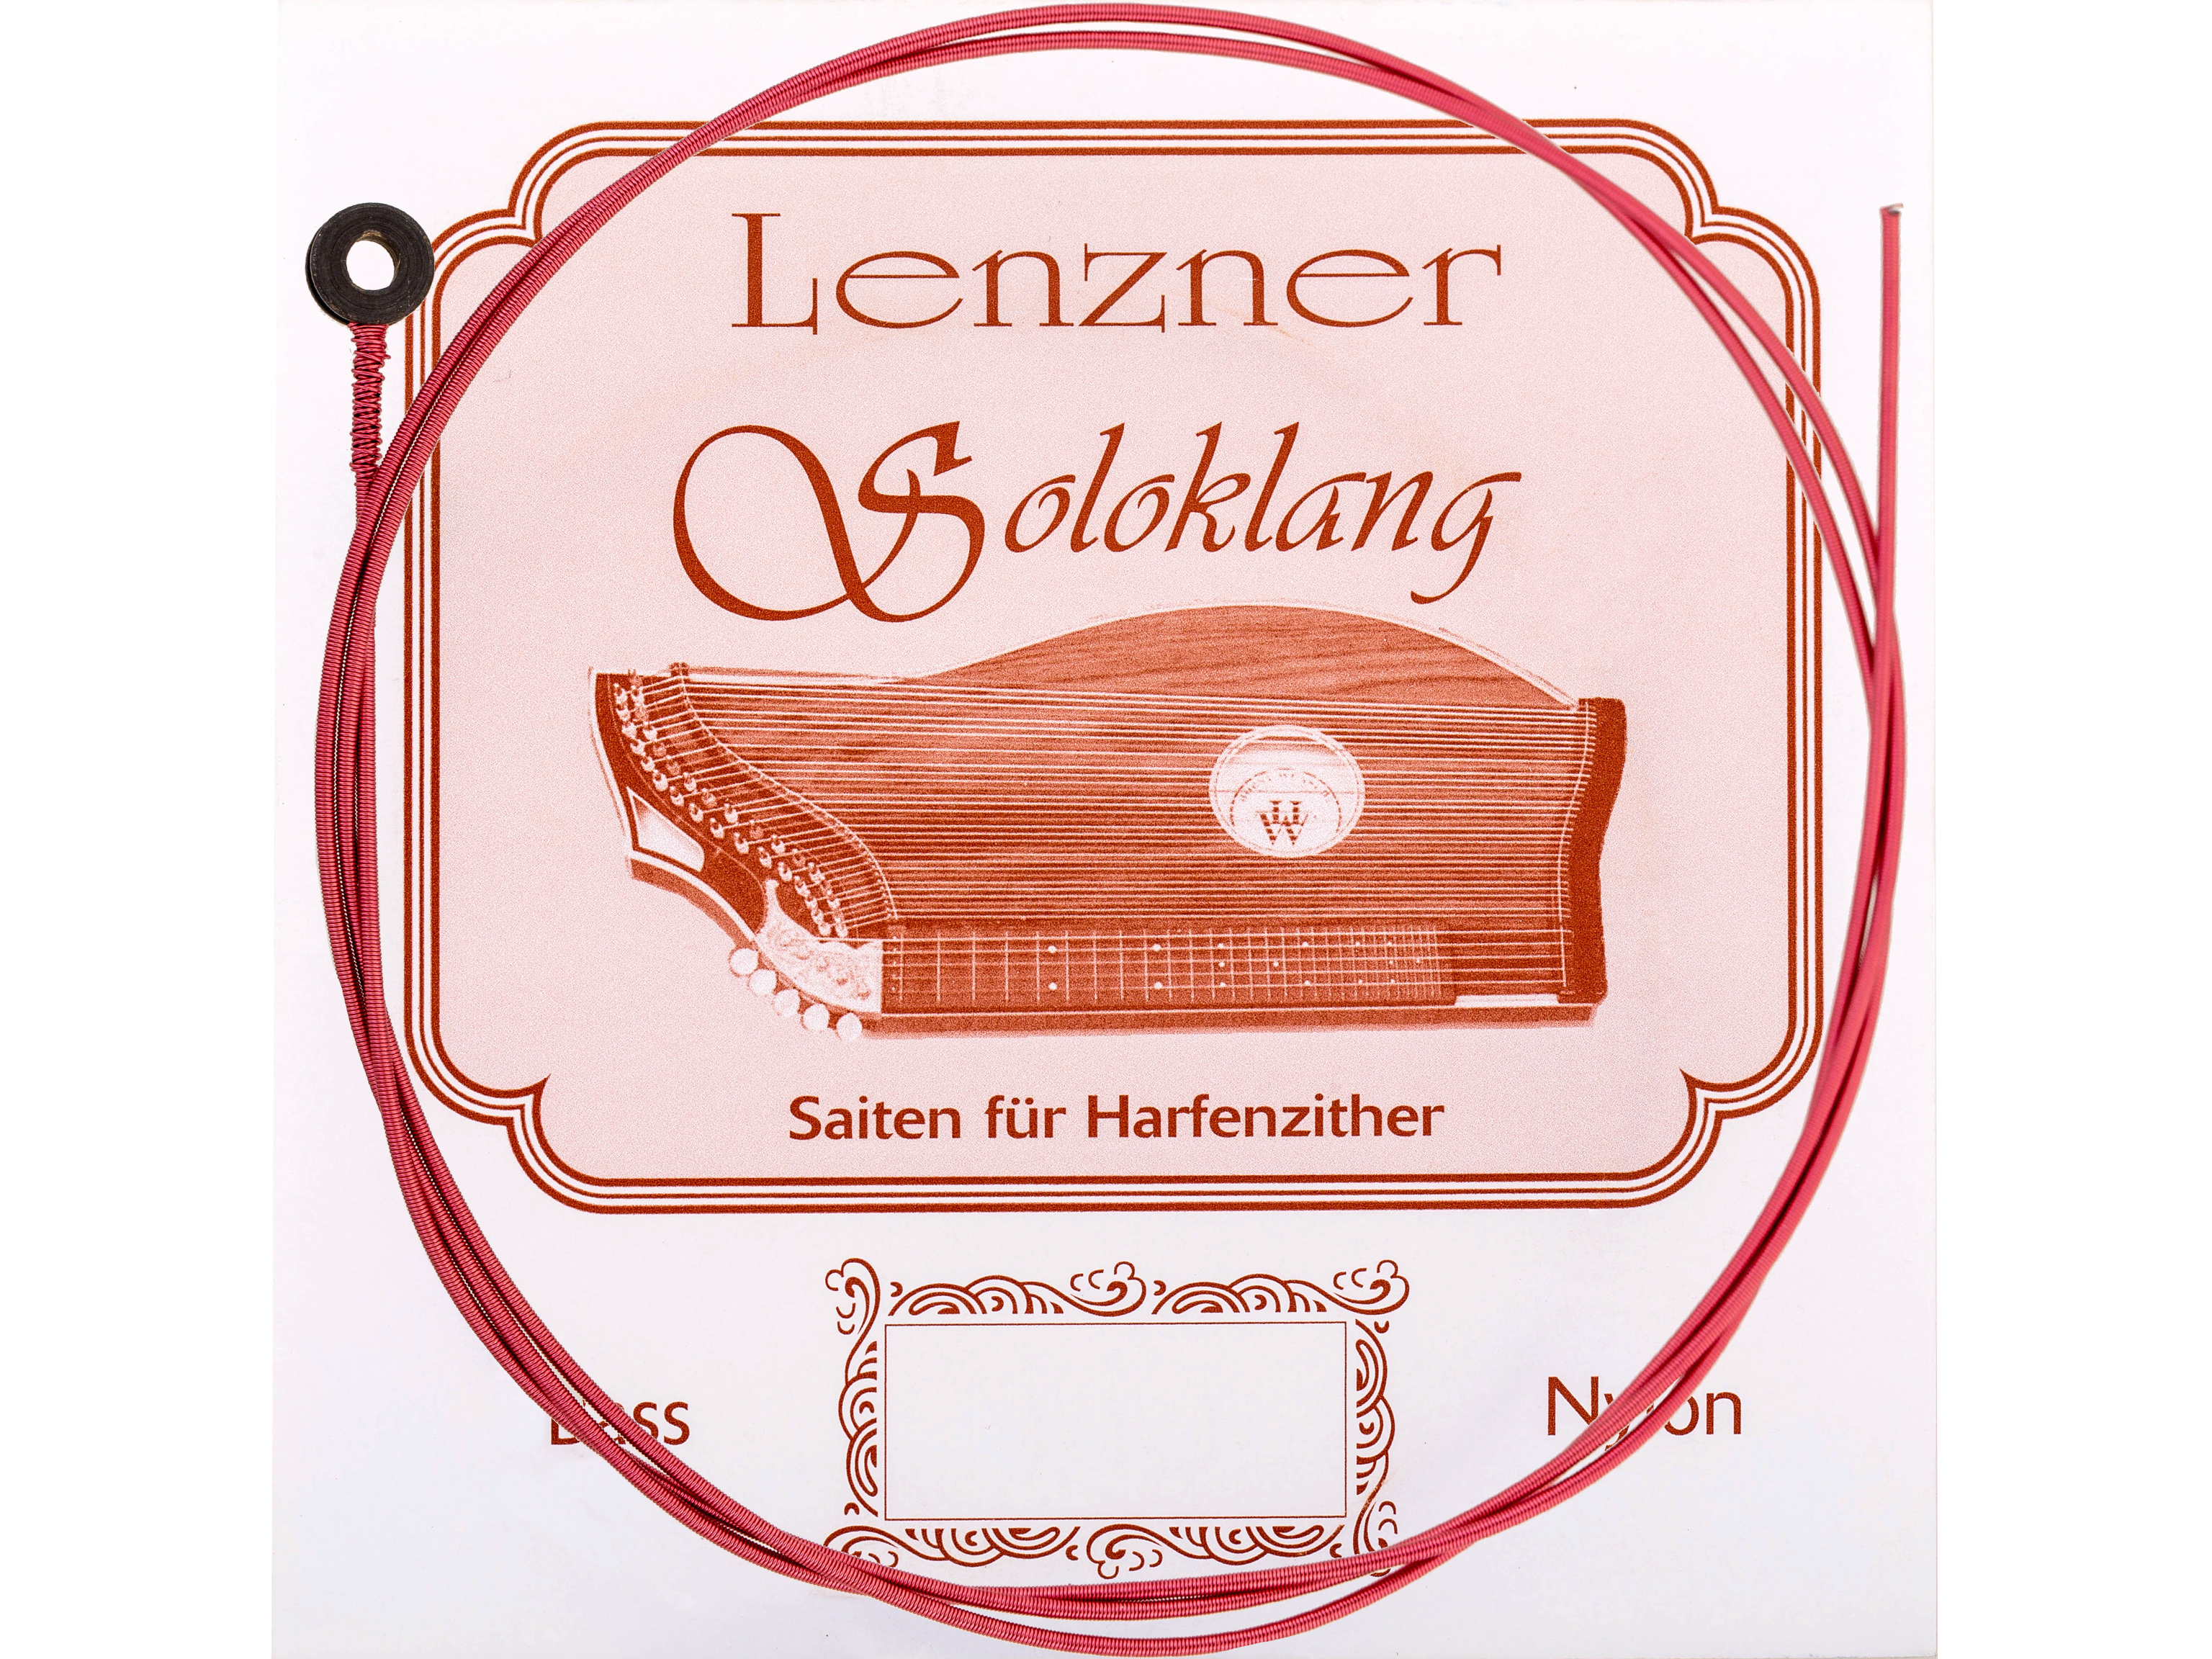 Lenzner 15. F Zithersaite Soloklang Bass